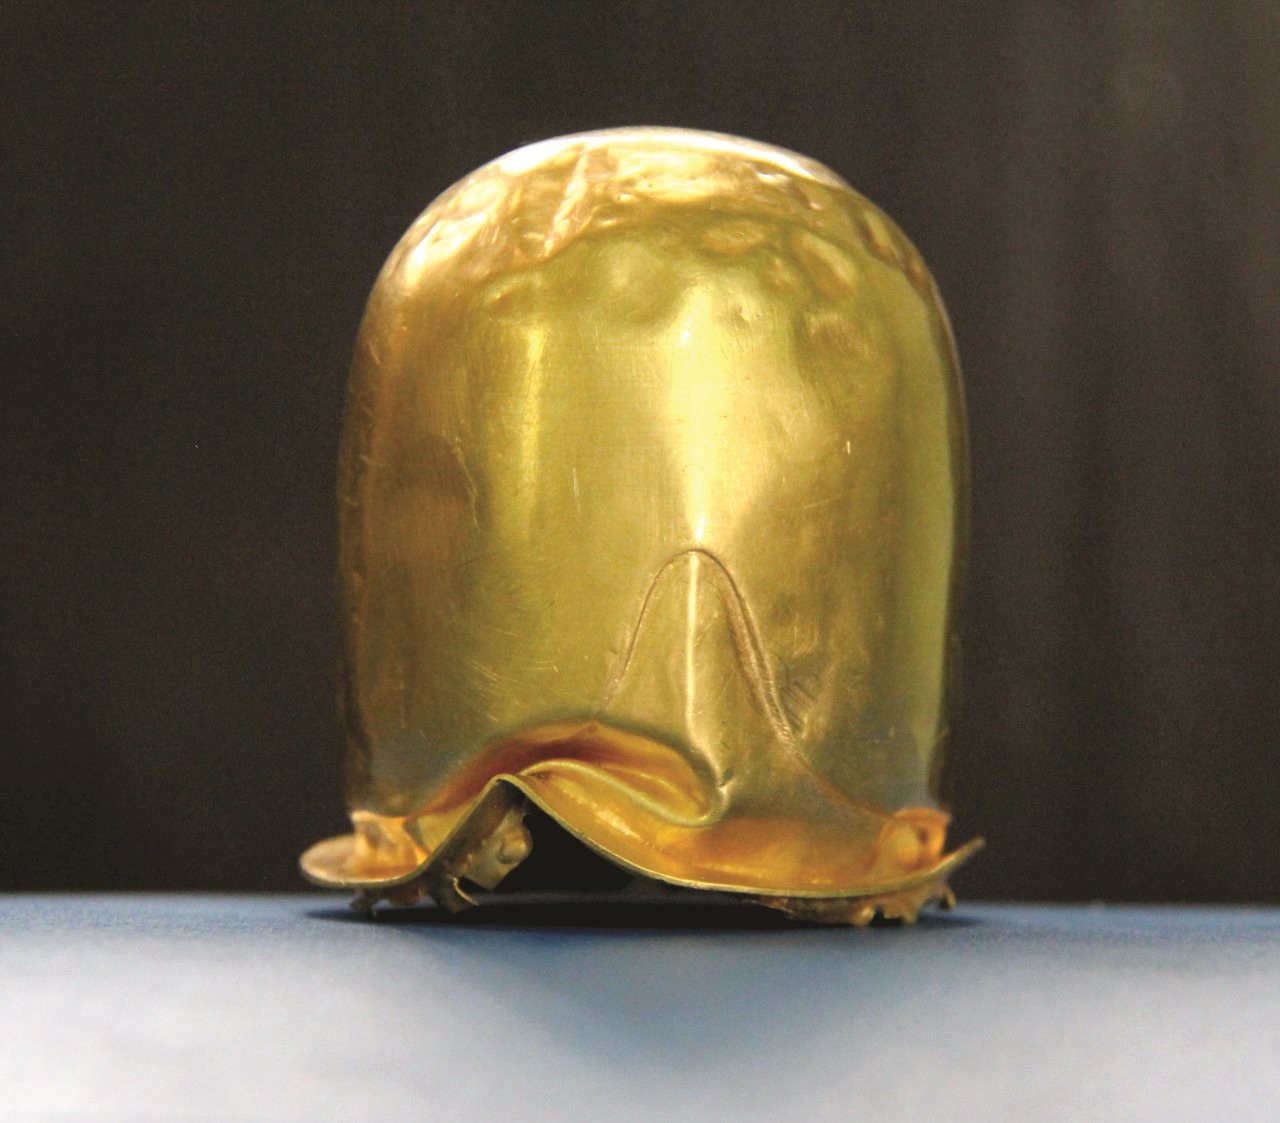 Linga vàng được xem là một trong những báu vật của người Chăm